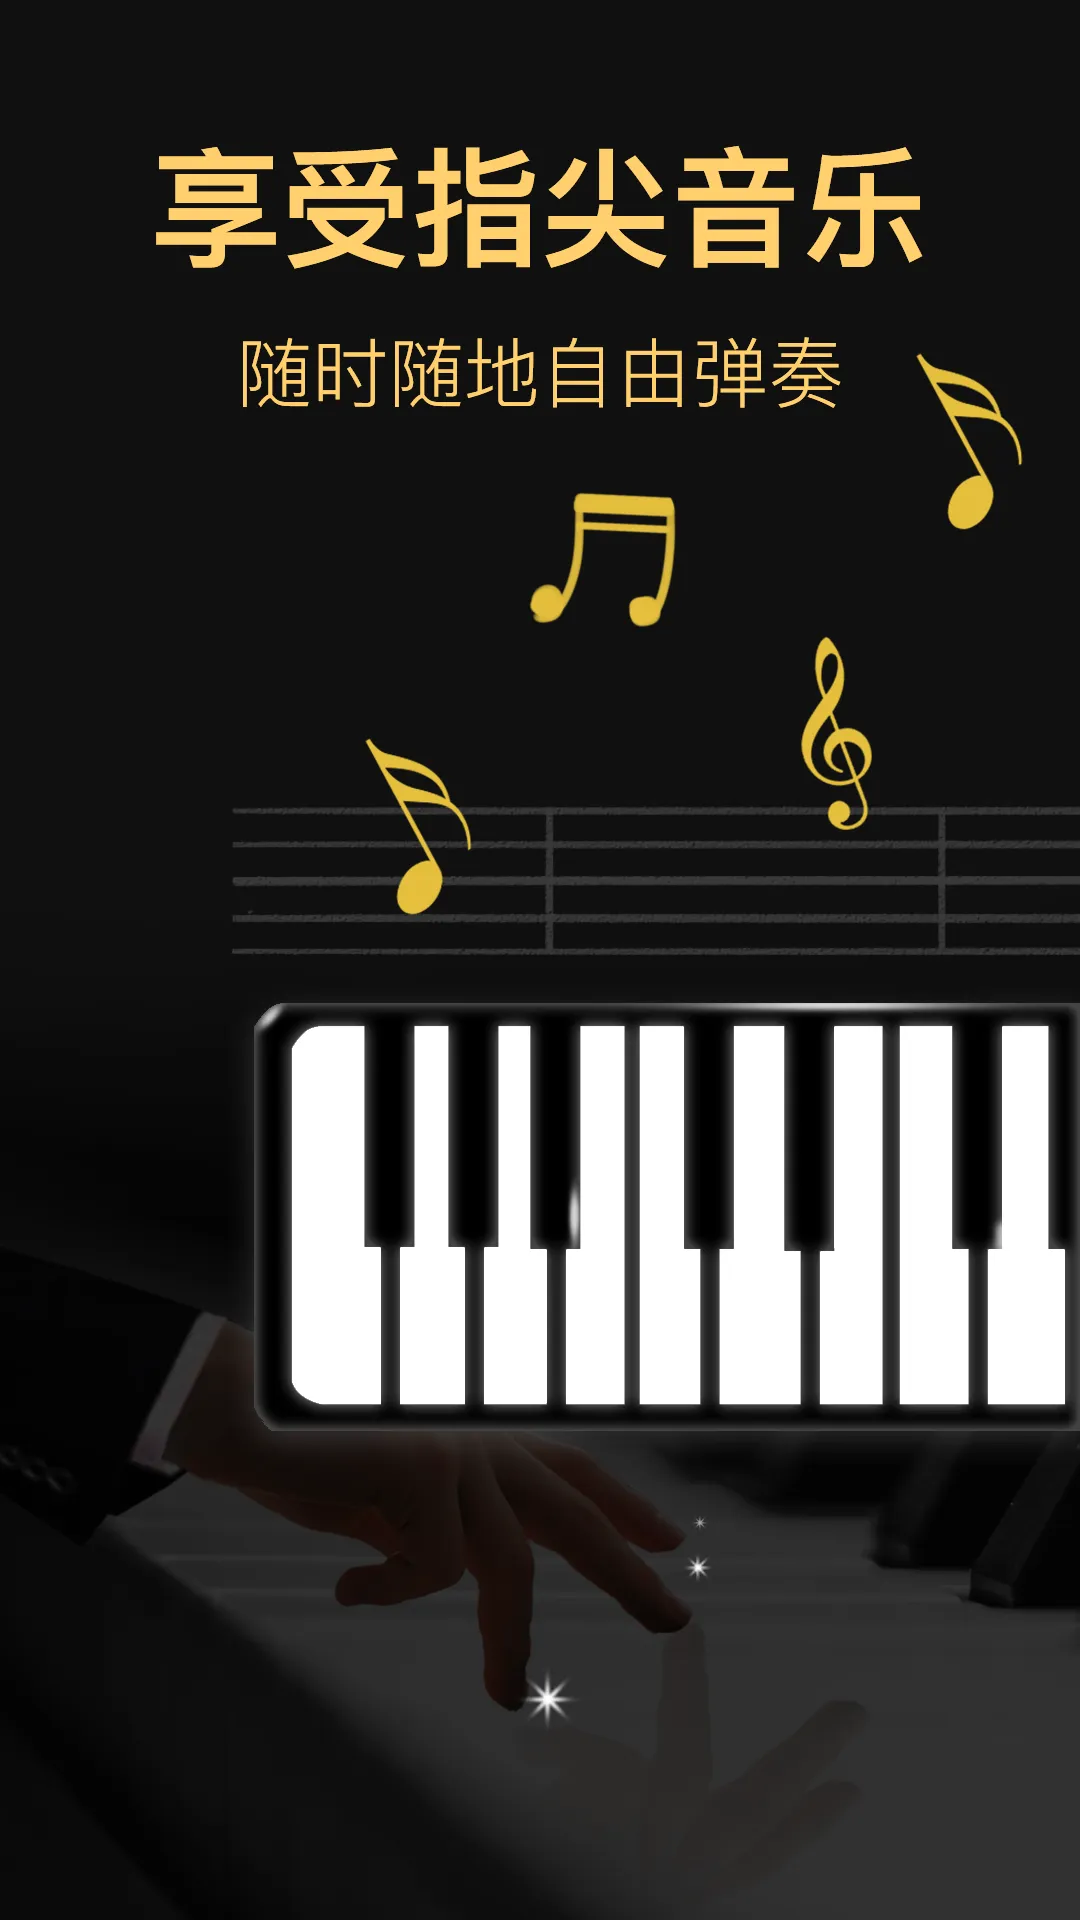 光遇钢琴自动弹奏软件哪个好 光遇